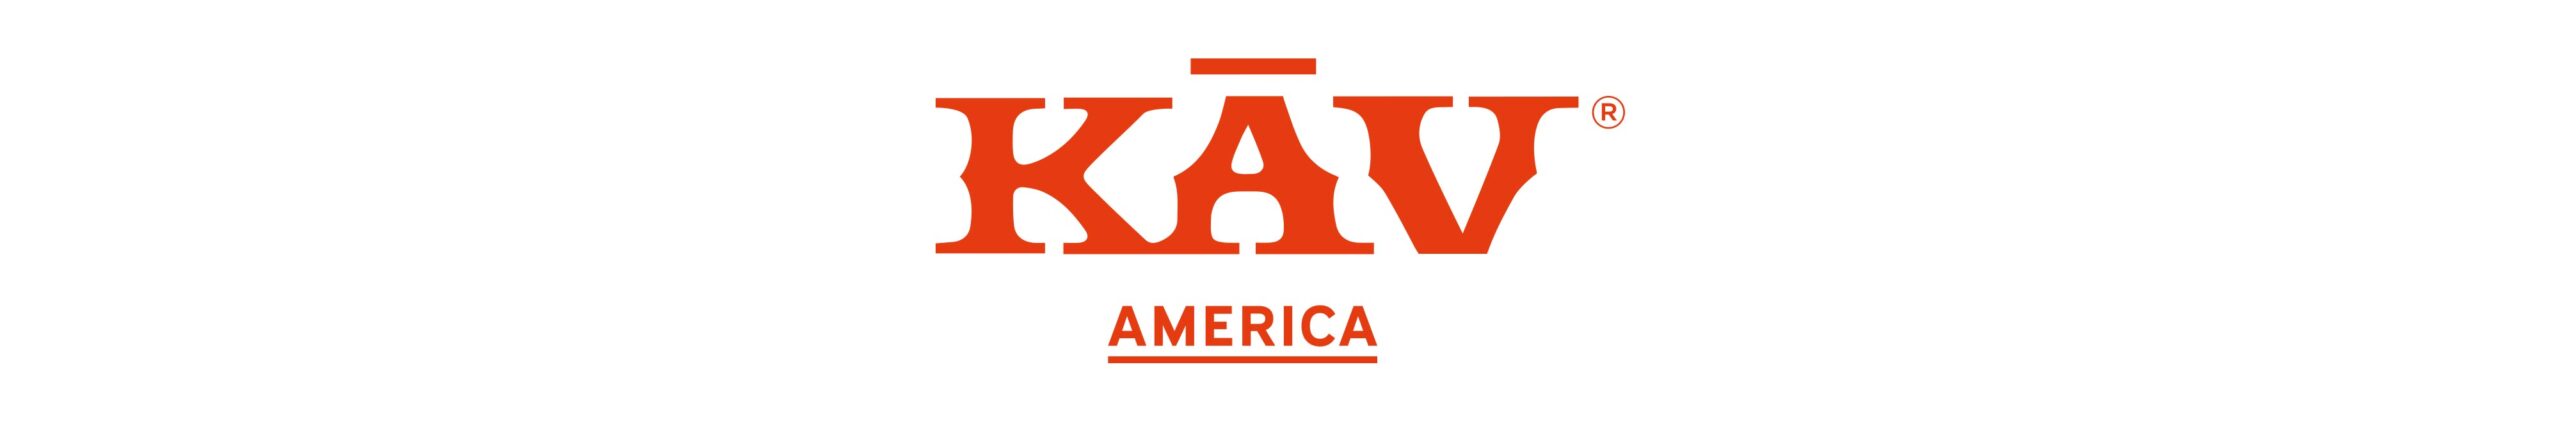 Kav-logo-header